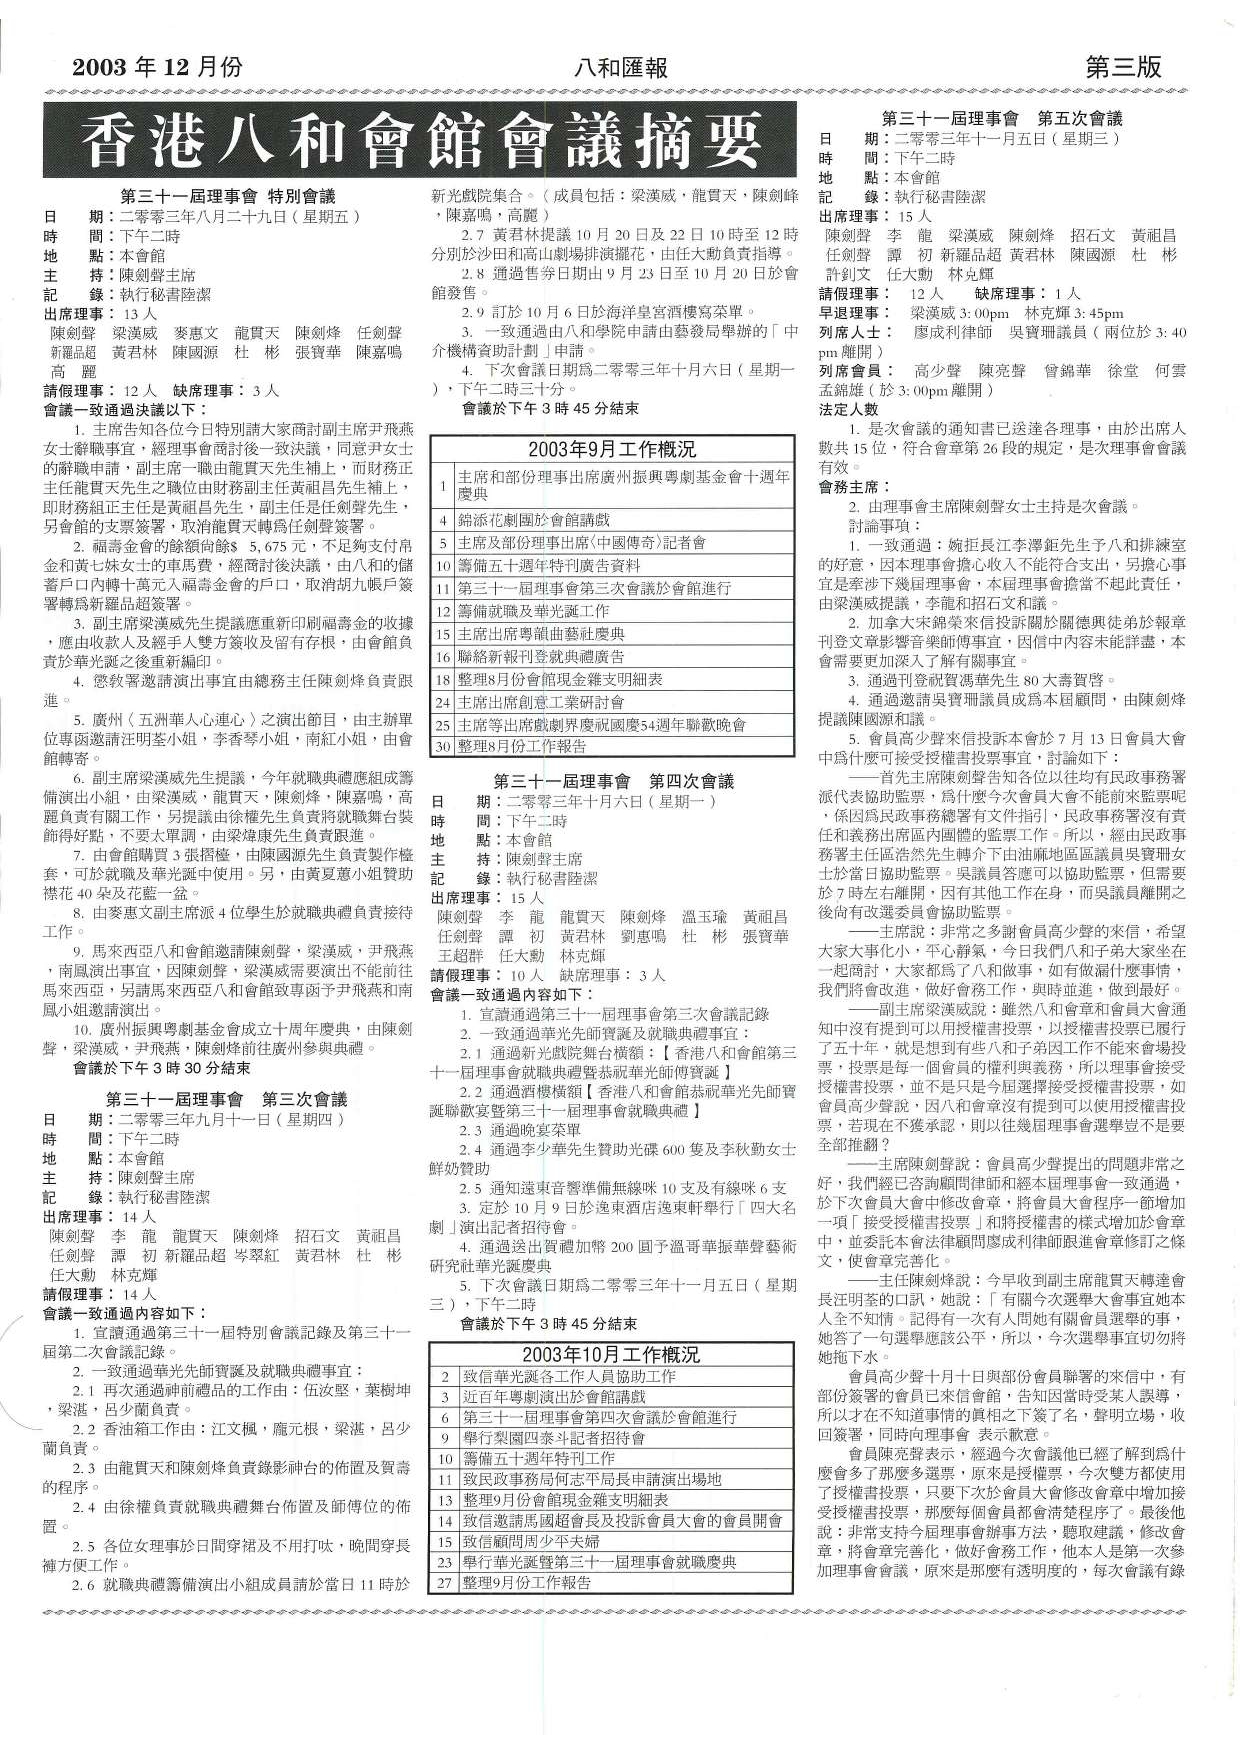 香港八和會館第三十一屆理事會特別會議、第三至五次會議議程及辦公室報告（2003年9月至10月）